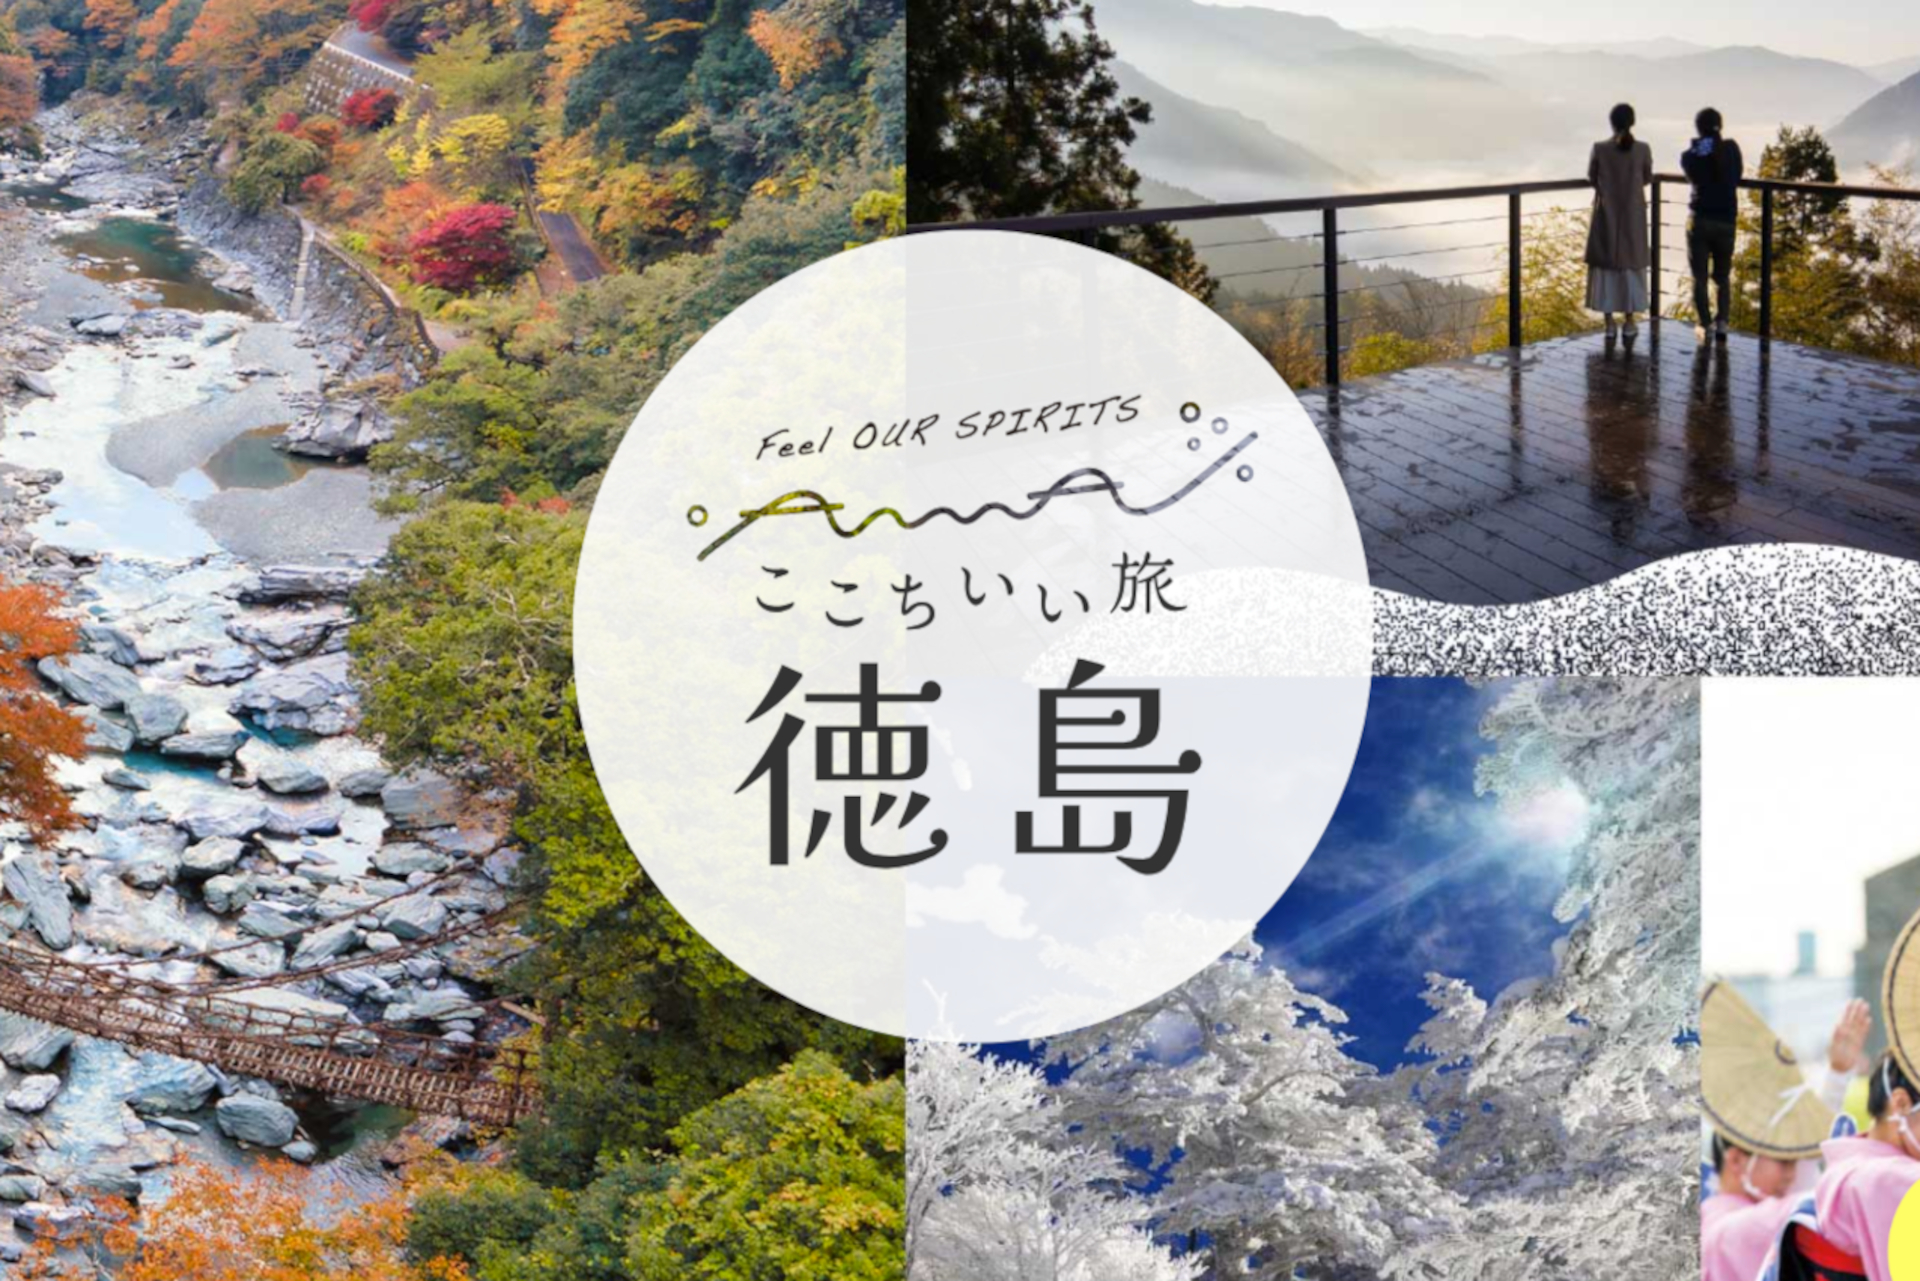 徳島県、1泊5000円クーポンもらえる新たな旅行支援。さらに宿泊プラン